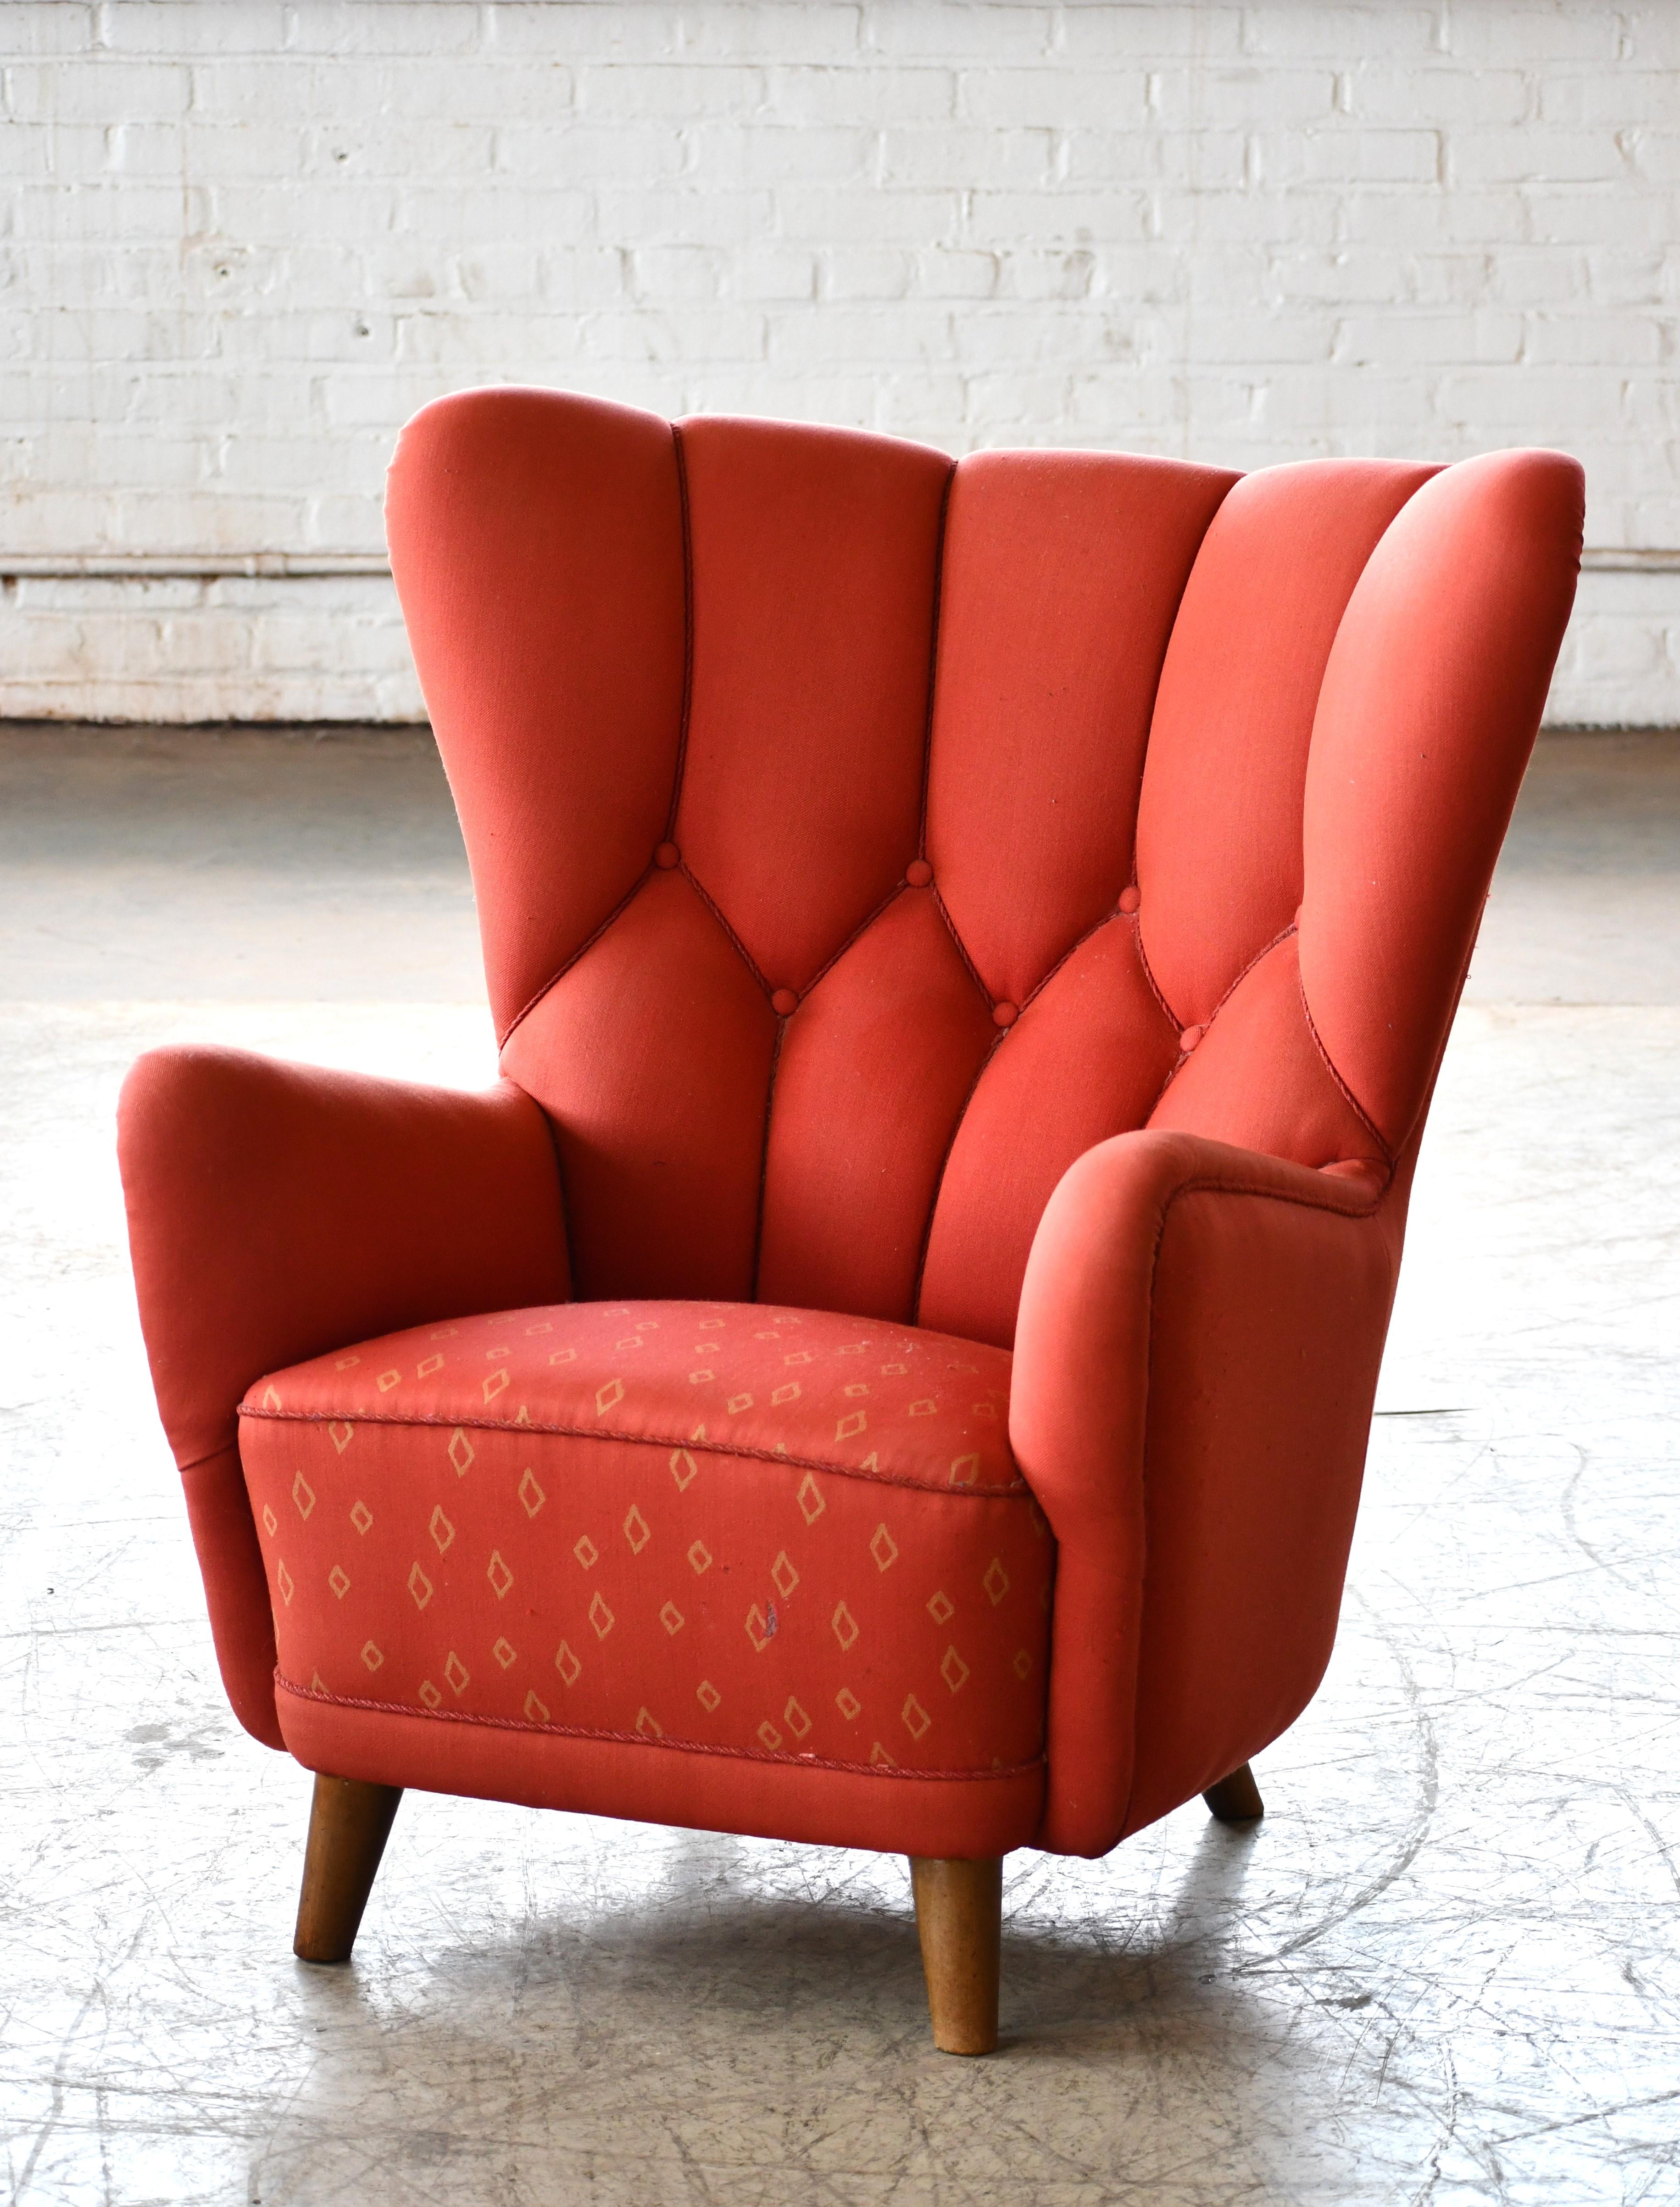 Superscharfer Lounge-Sessel mit hoher Rückenlehne aus den 1940er Jahren. Der Hersteller und Designer ist uns nicht bekannt, aber er weist Stilelemente von Georg Kofoed und Mogens Lassen auf, vor allem die Haltung und die Form der Armlehne. Das